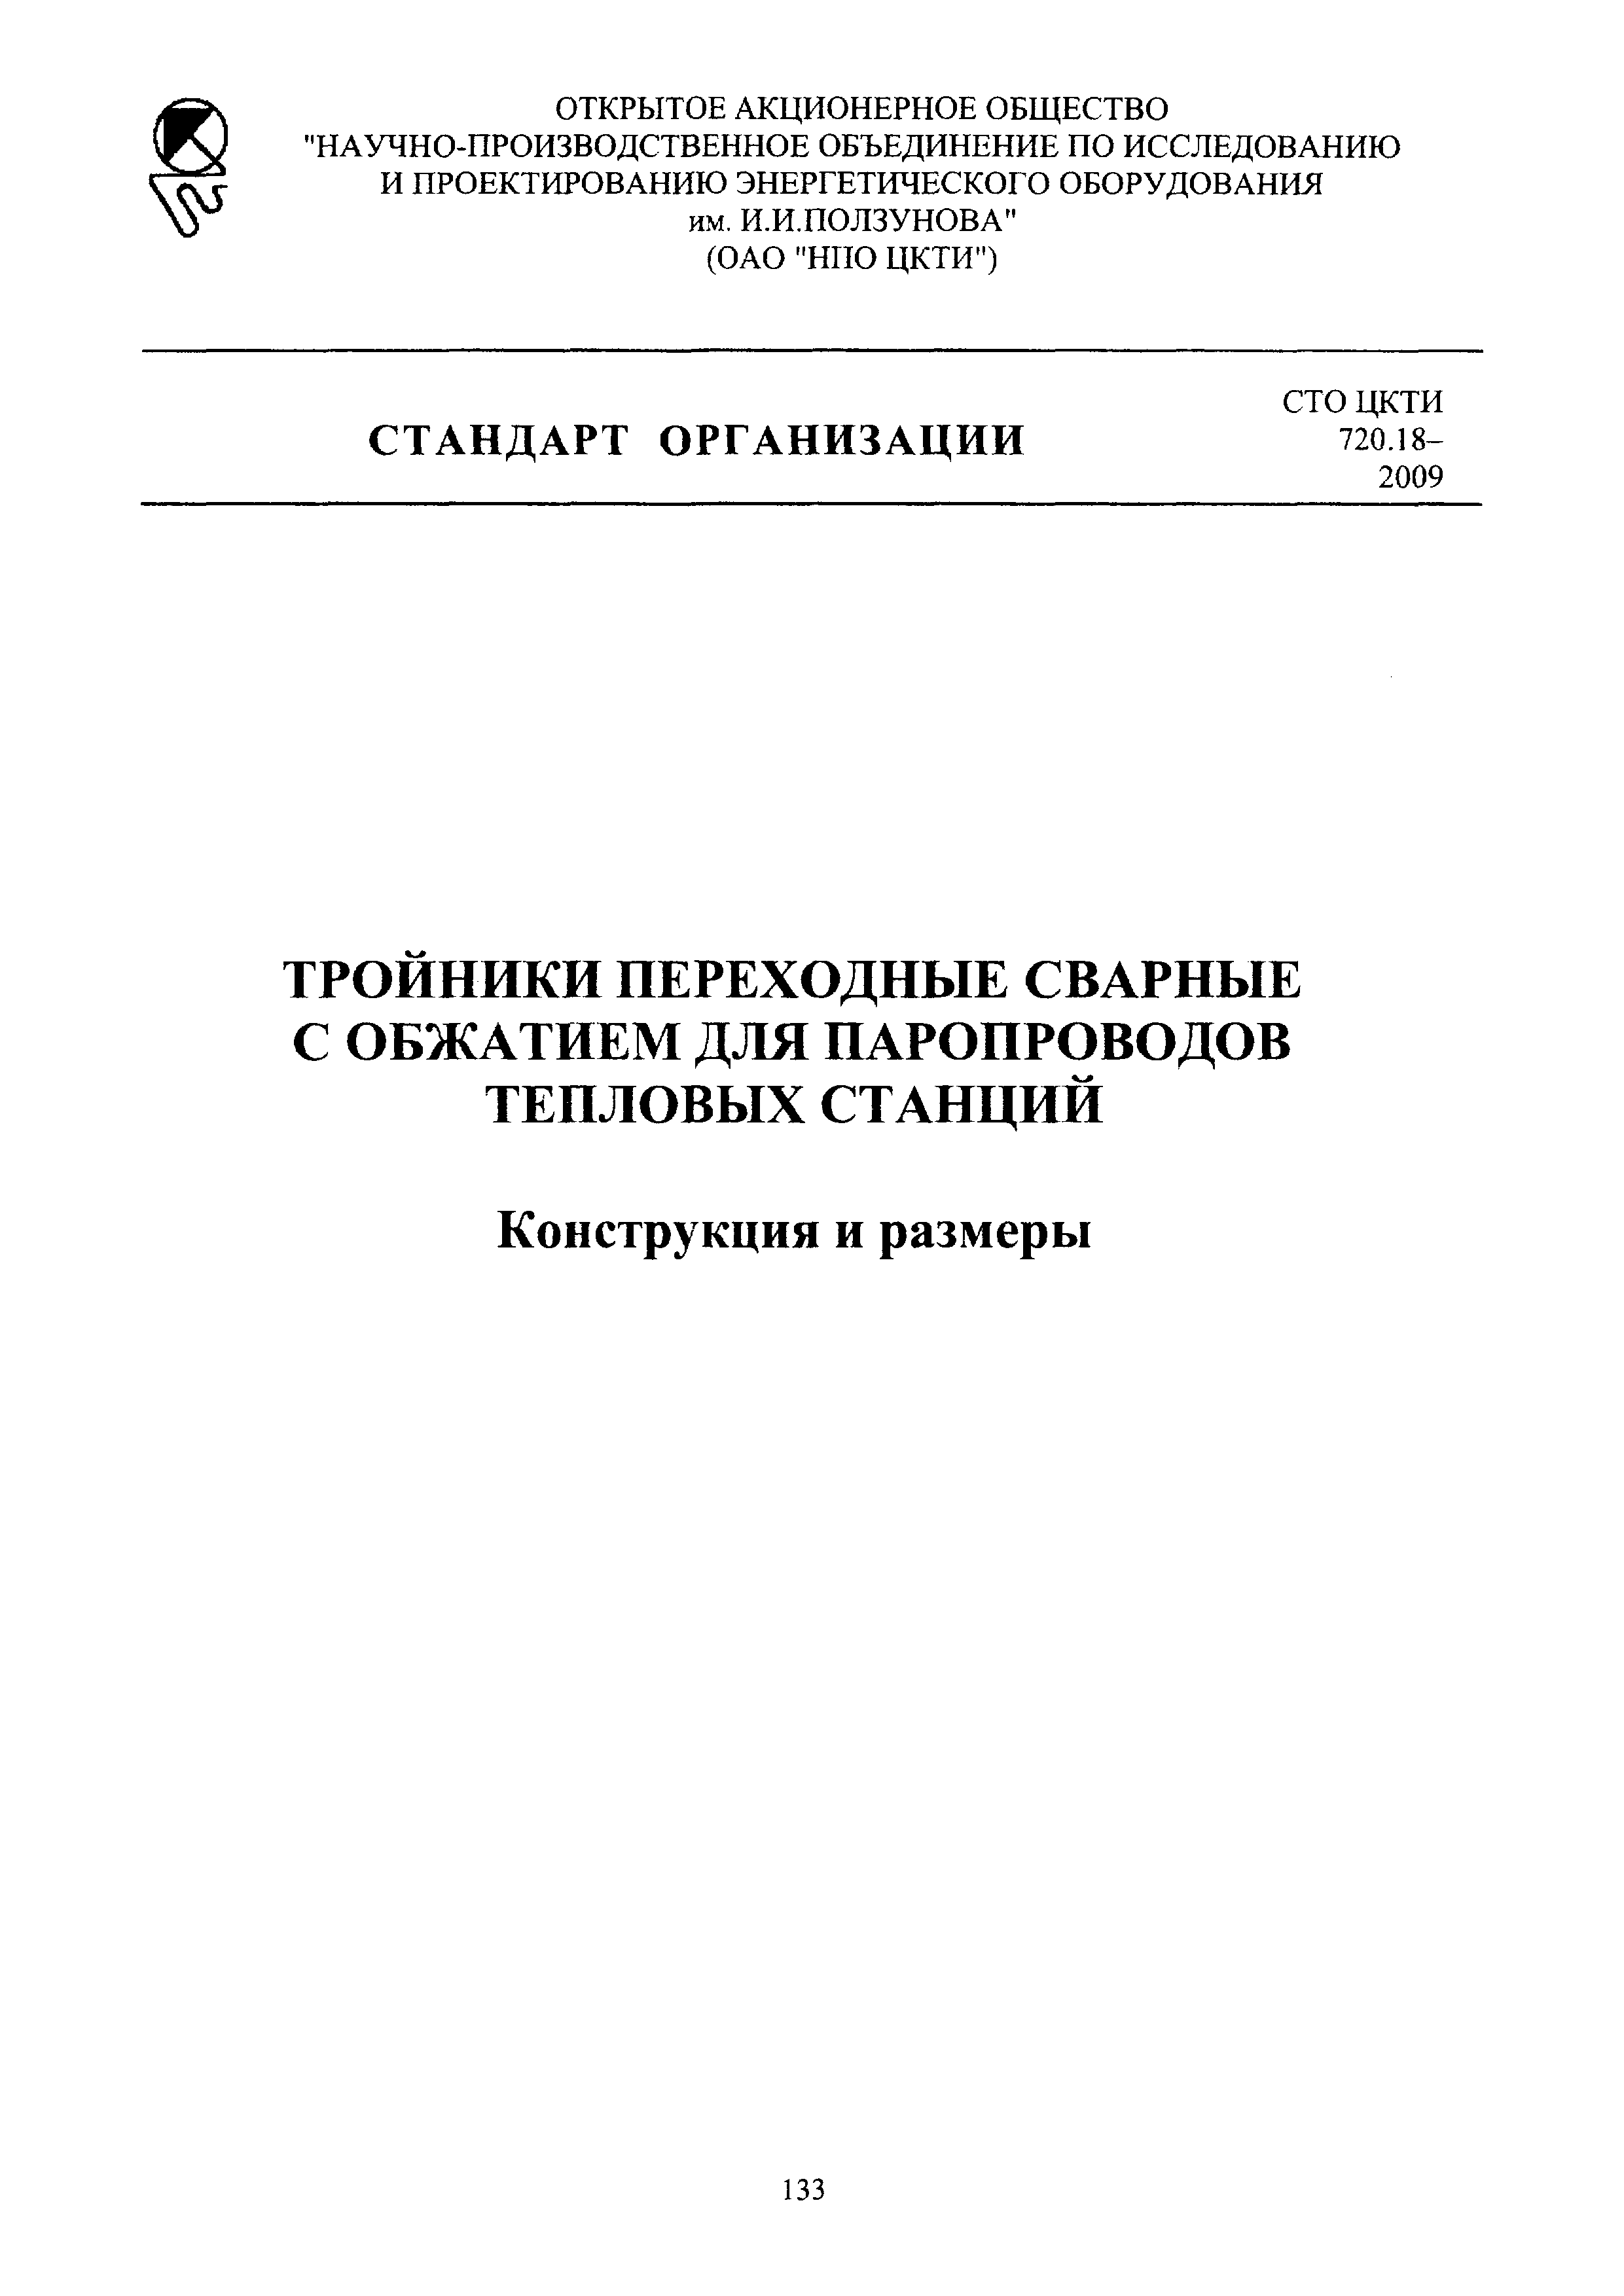 СТО ЦКТИ 720.18-2009